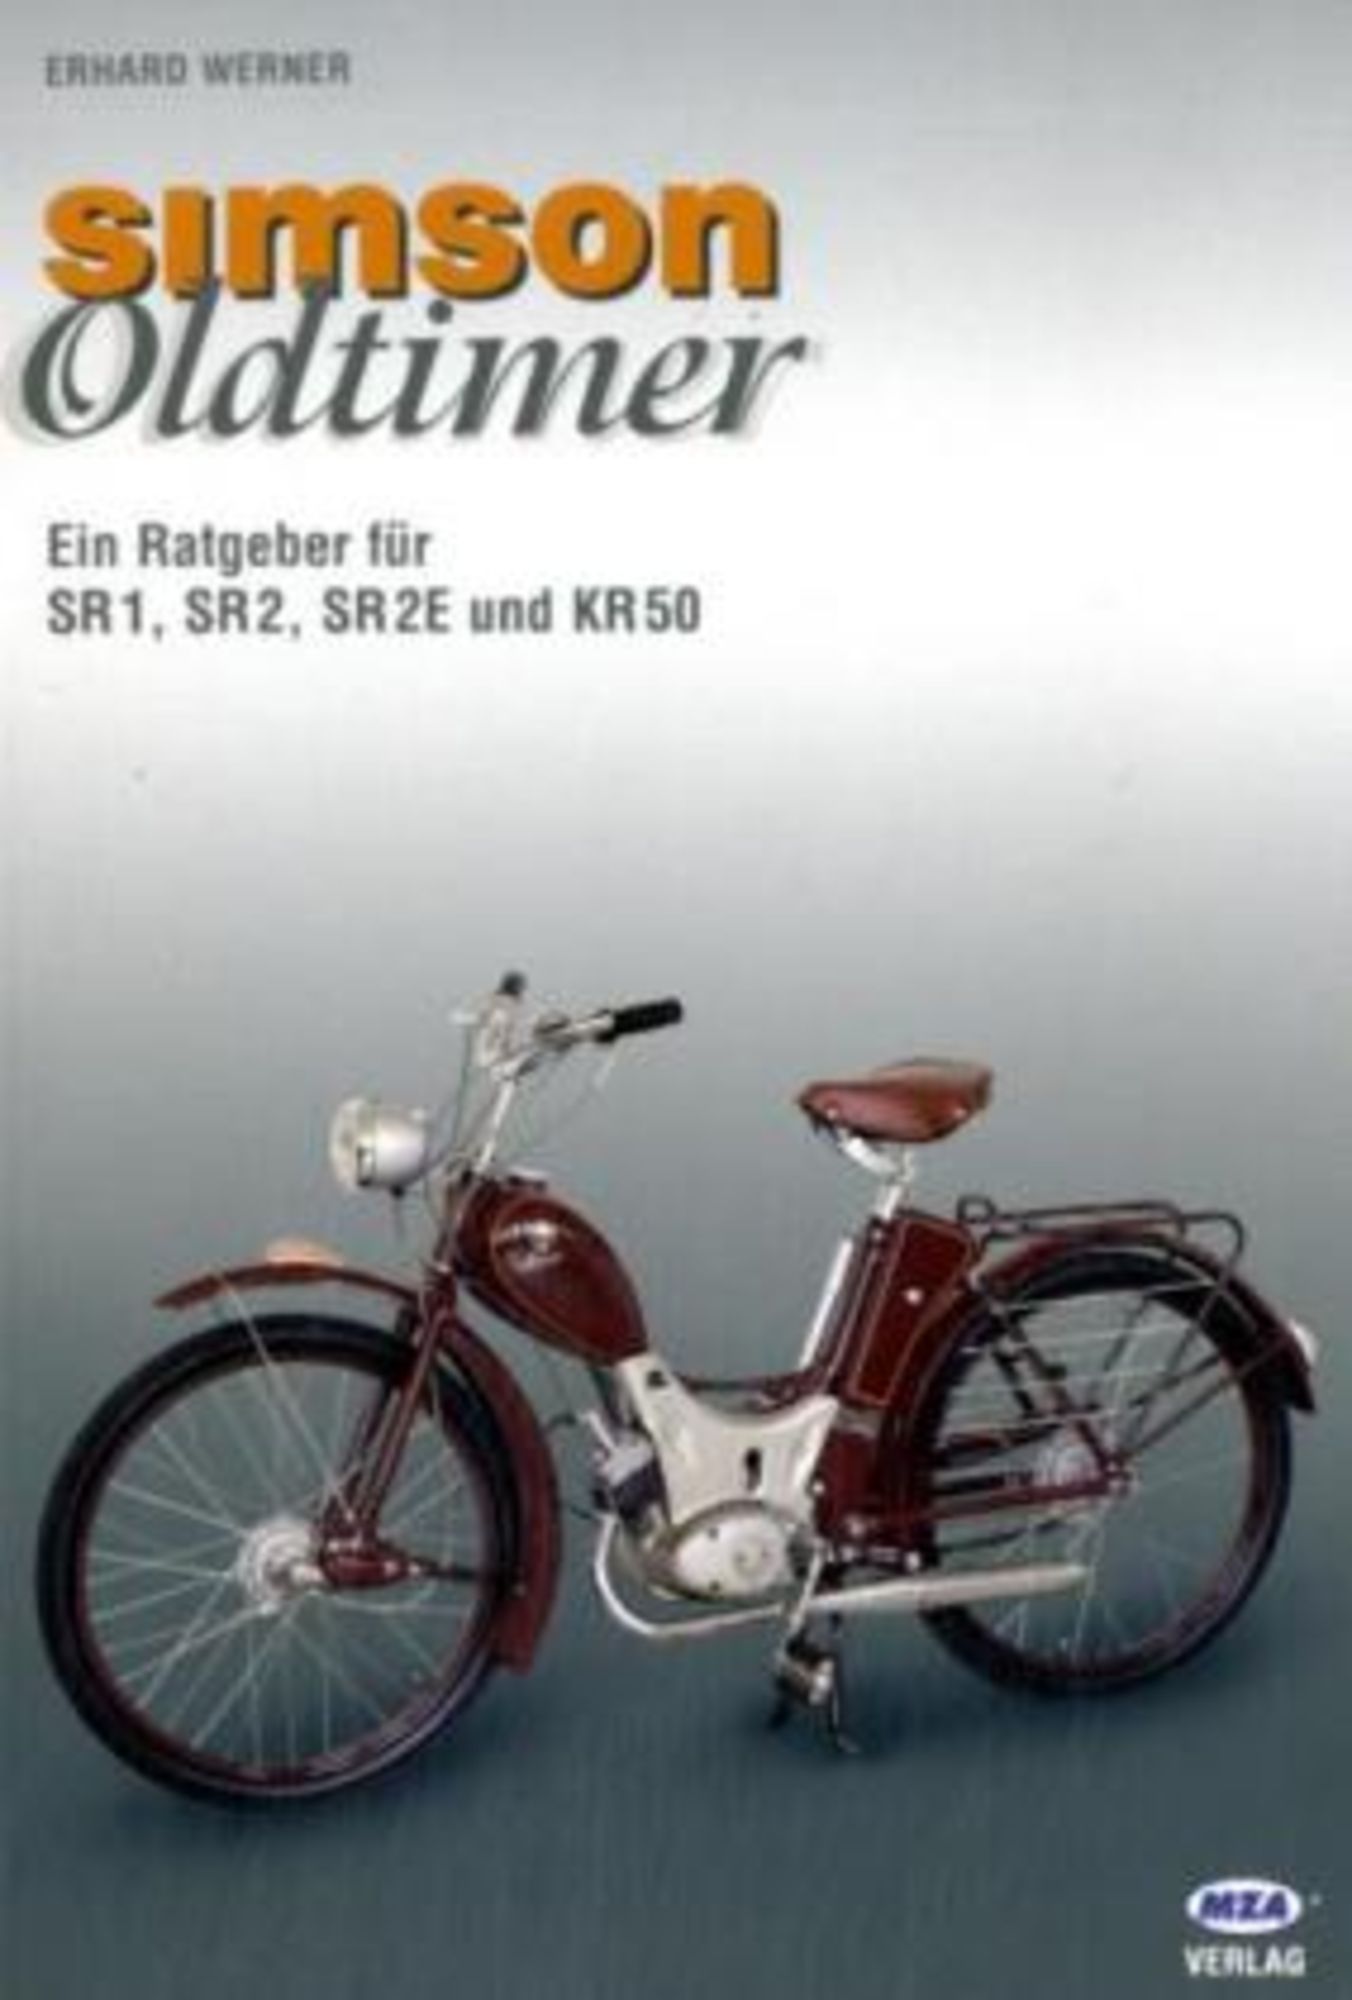 Moto-Classics - Kompetenz für Ihren Oldtimer - Autouhr Weimar Werk